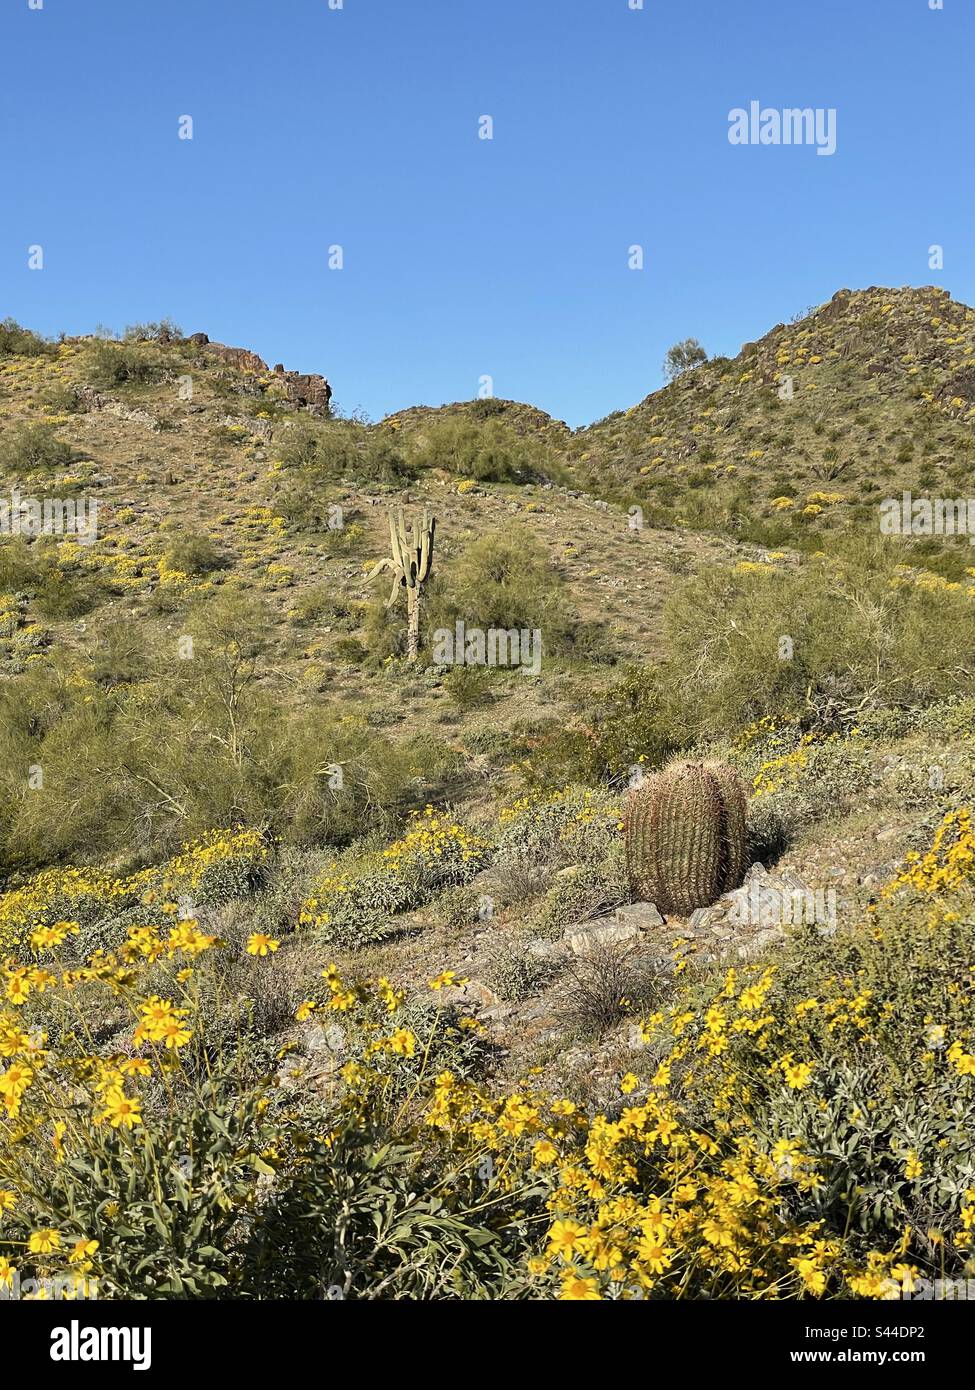 Réserve de montagnes de Phoenix au printemps, buissons fragiles bordent des pentes rocheuses, jaune brillant parmi les rochers déchiquetés, fleurs sauvages, désert de Sonoran, ciel bleu vif, saguaro, Barrel cactus, Arizona Banque D'Images